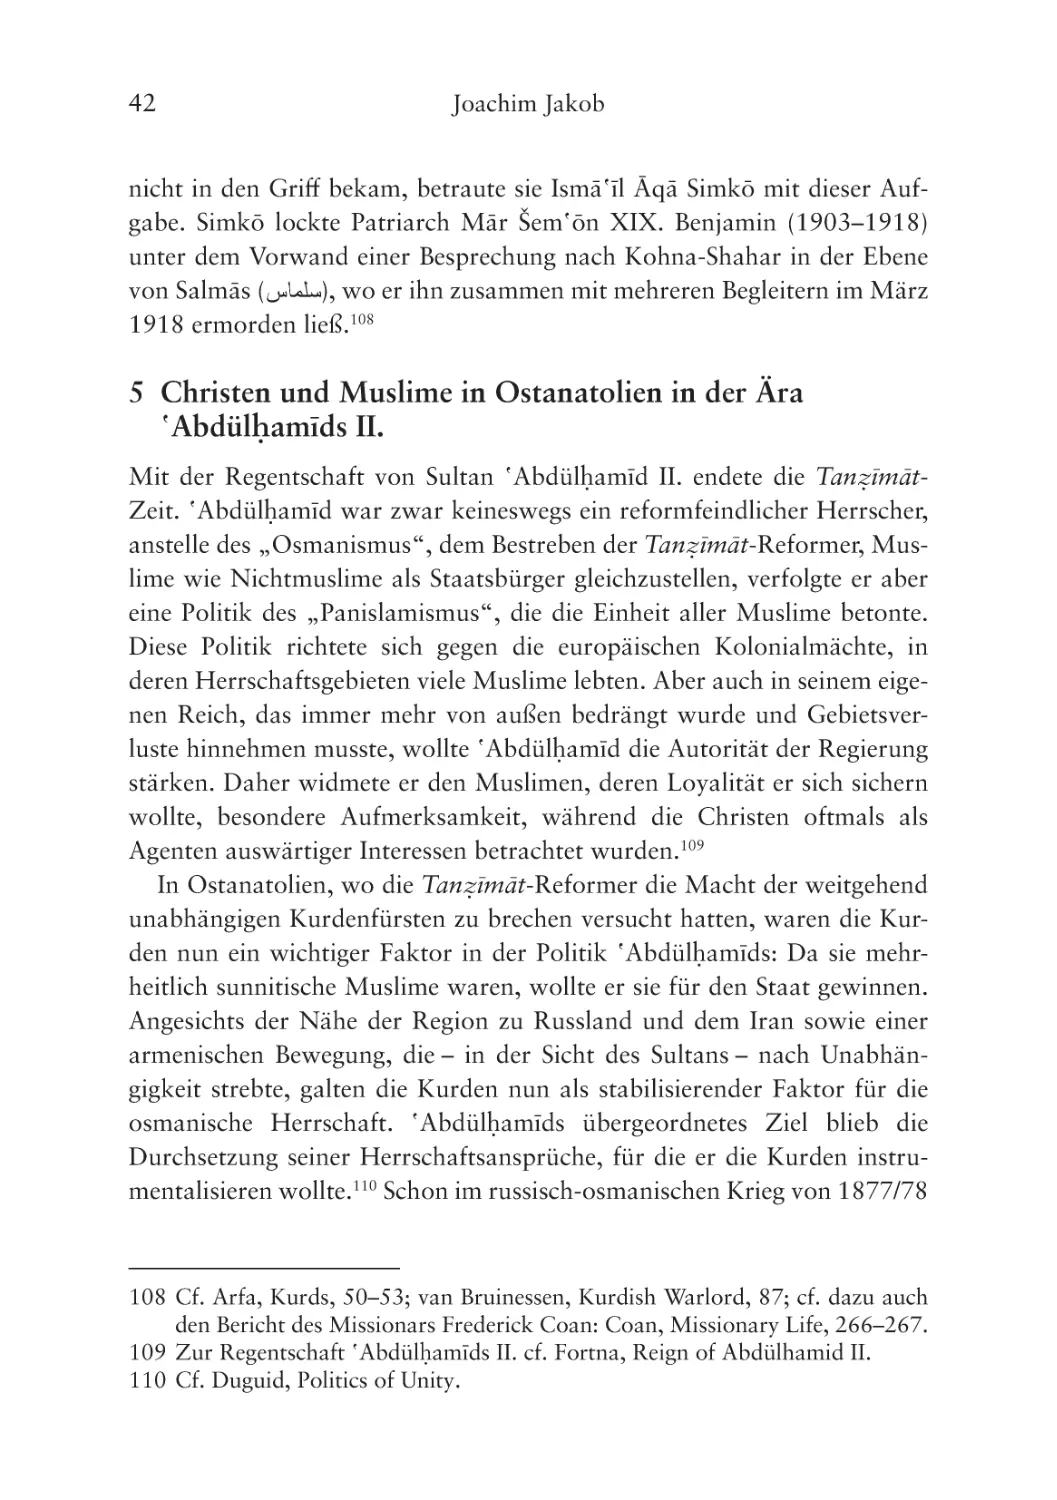 5 Christen und Muslime in Ostanatolien in der Ära ʽAbdülḥamīds II.